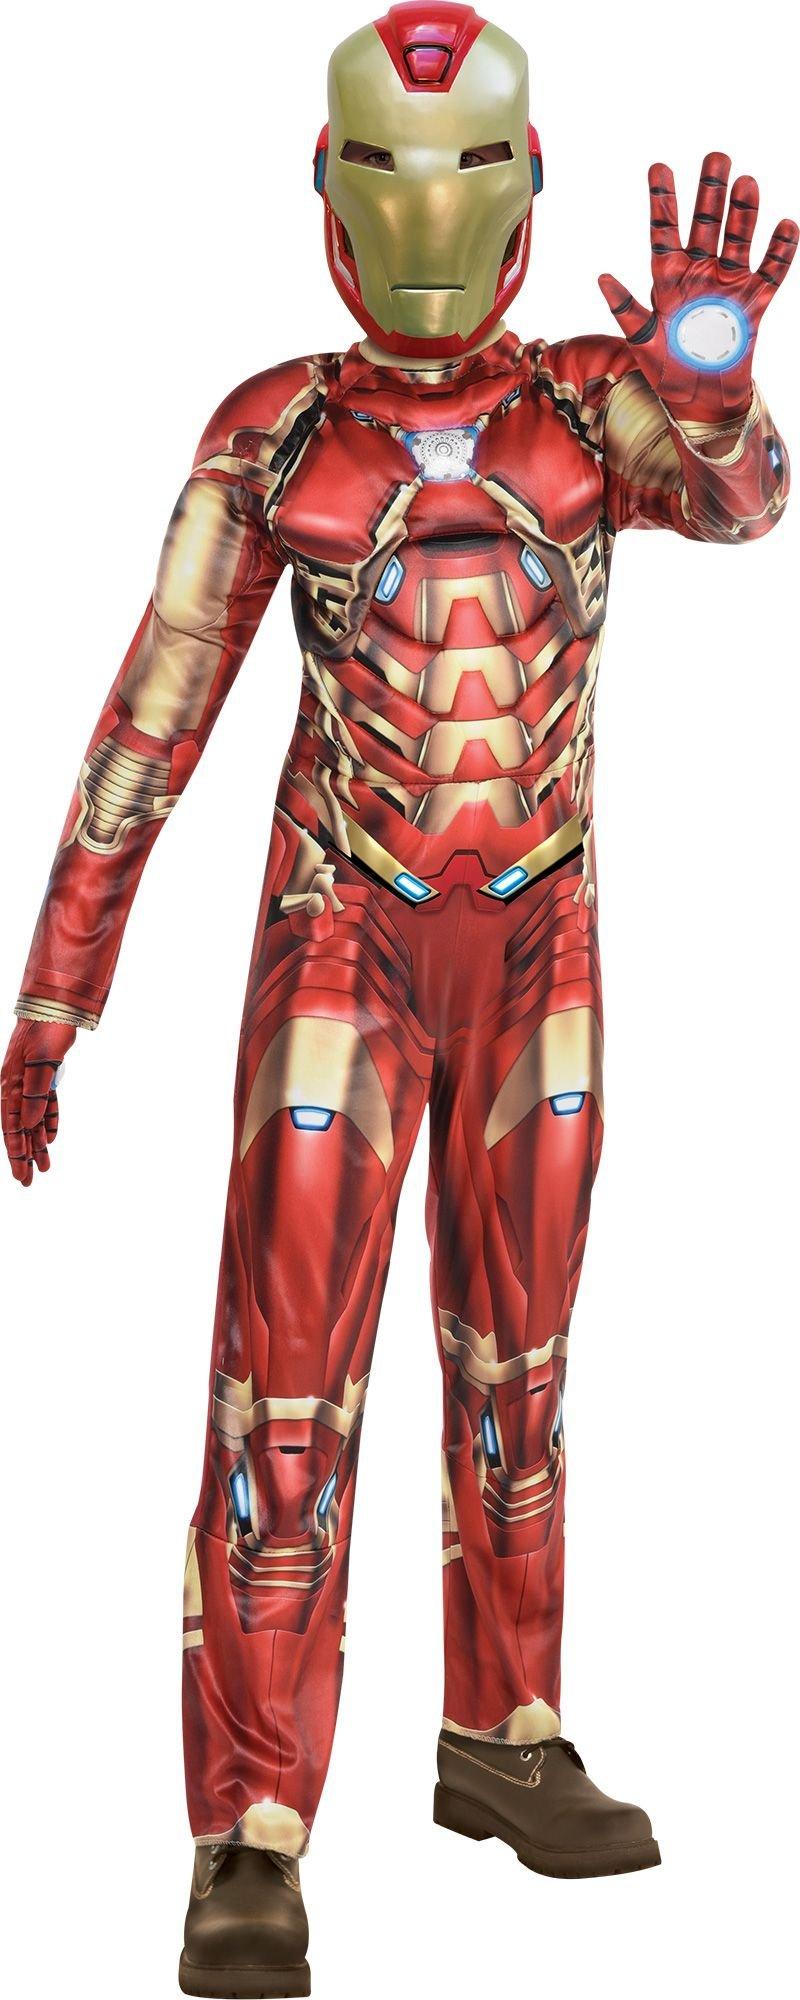 Pink iron man  Iron man, Iron man suit, Super hero games